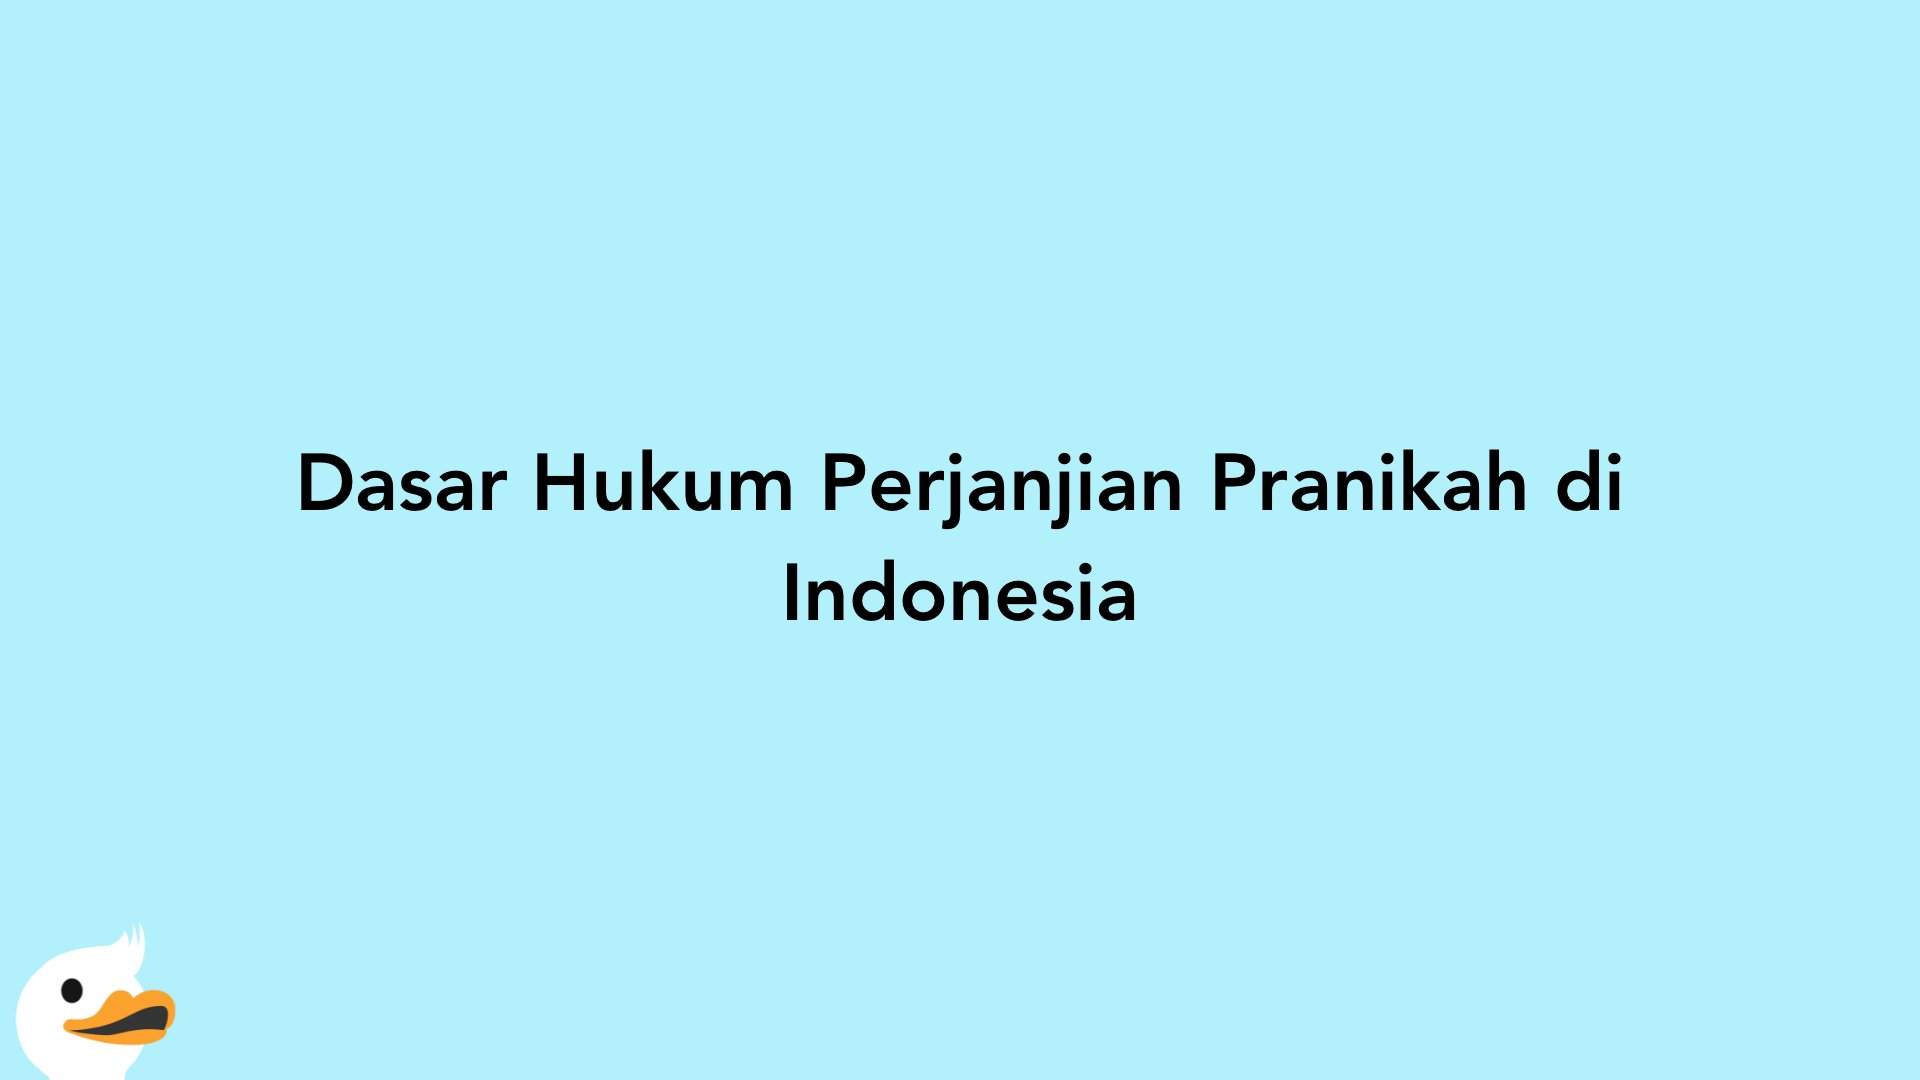 Dasar Hukum Perjanjian Pranikah di Indonesia